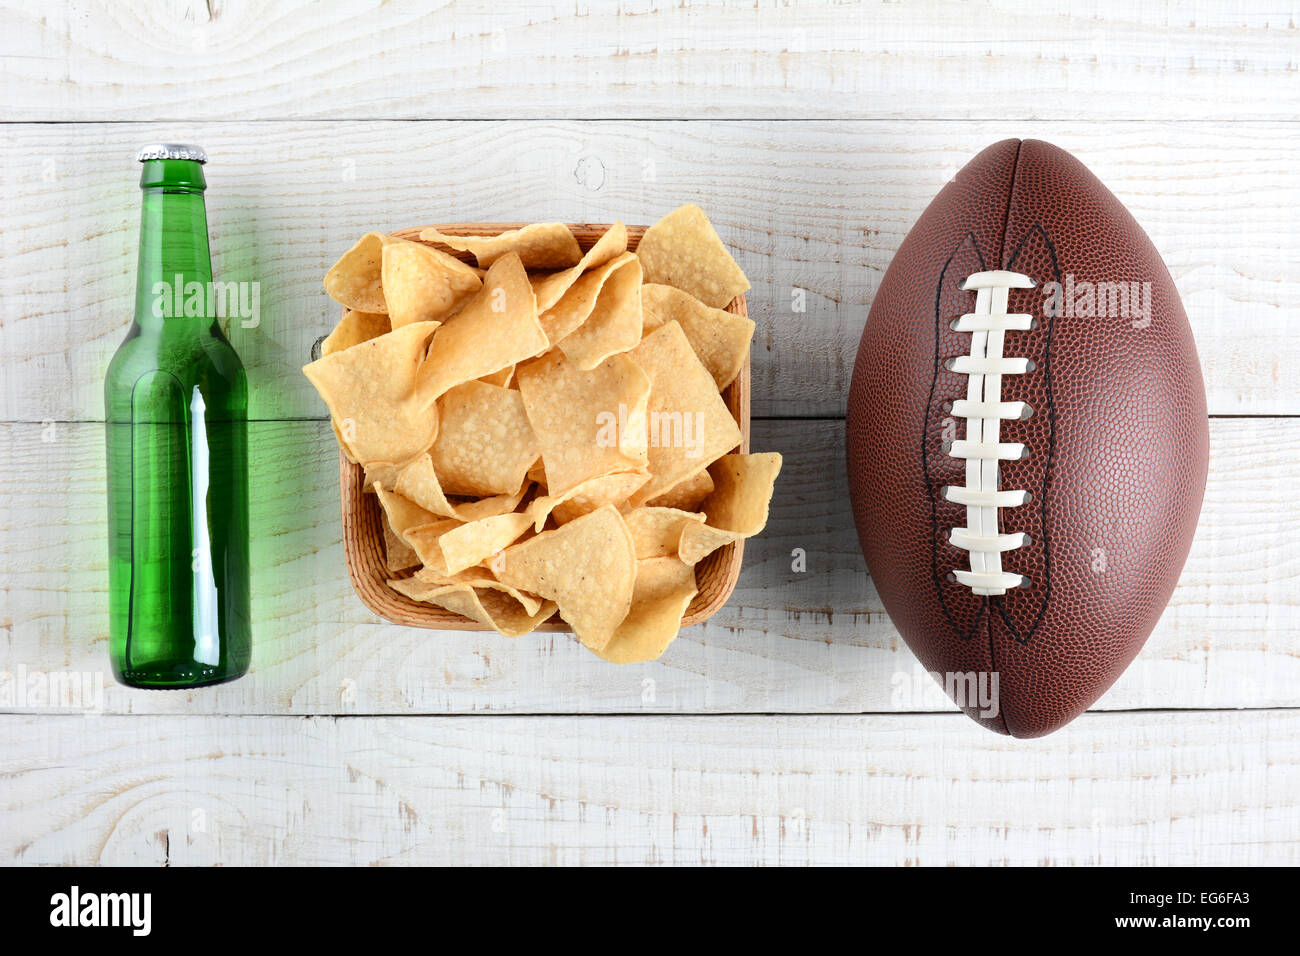 Bierflasche, Schüssel mit Chips und ein amerikanisches Fußball auf einem rustikalen weiß getünchten Holzoberfläche. Querformat. Die Flasche ist Stockfoto